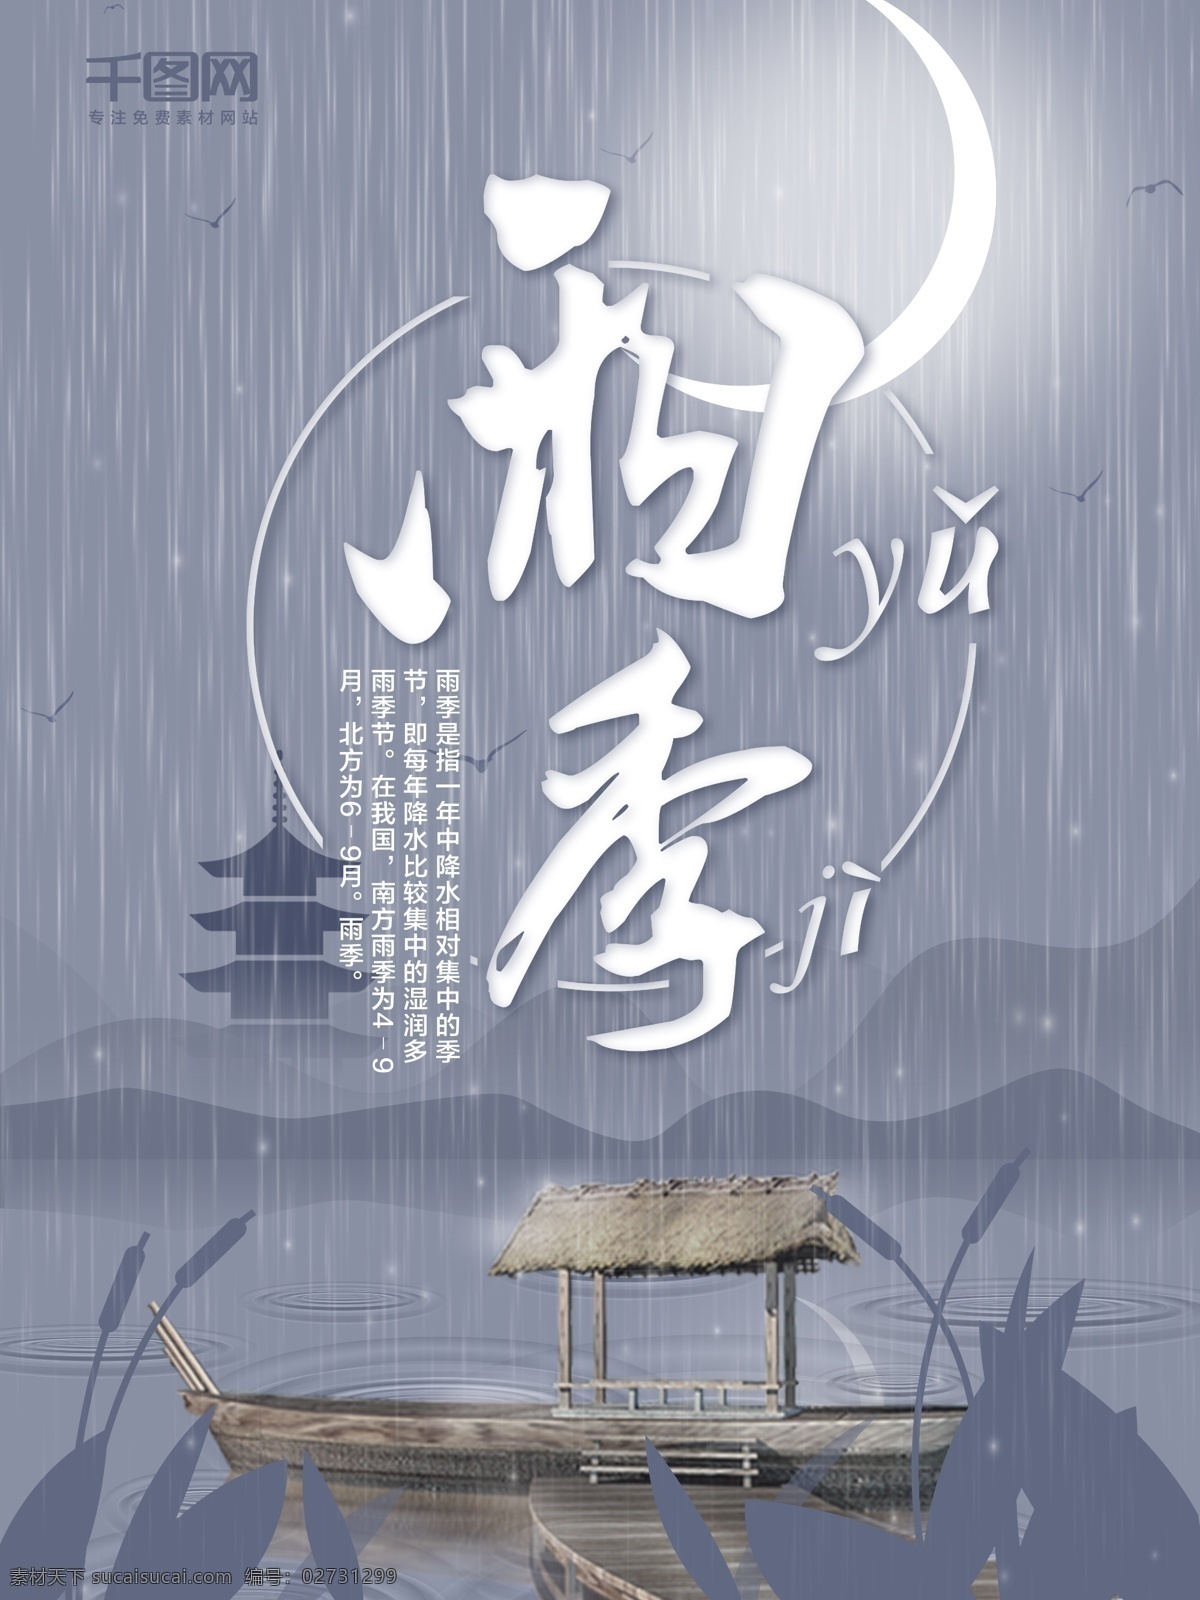 唯美 中国 风 雨水 上水 剪影 夏天 雨季 雨天海报 船 月亮海报 黑夜 弯弯的月亮 雷峰塔